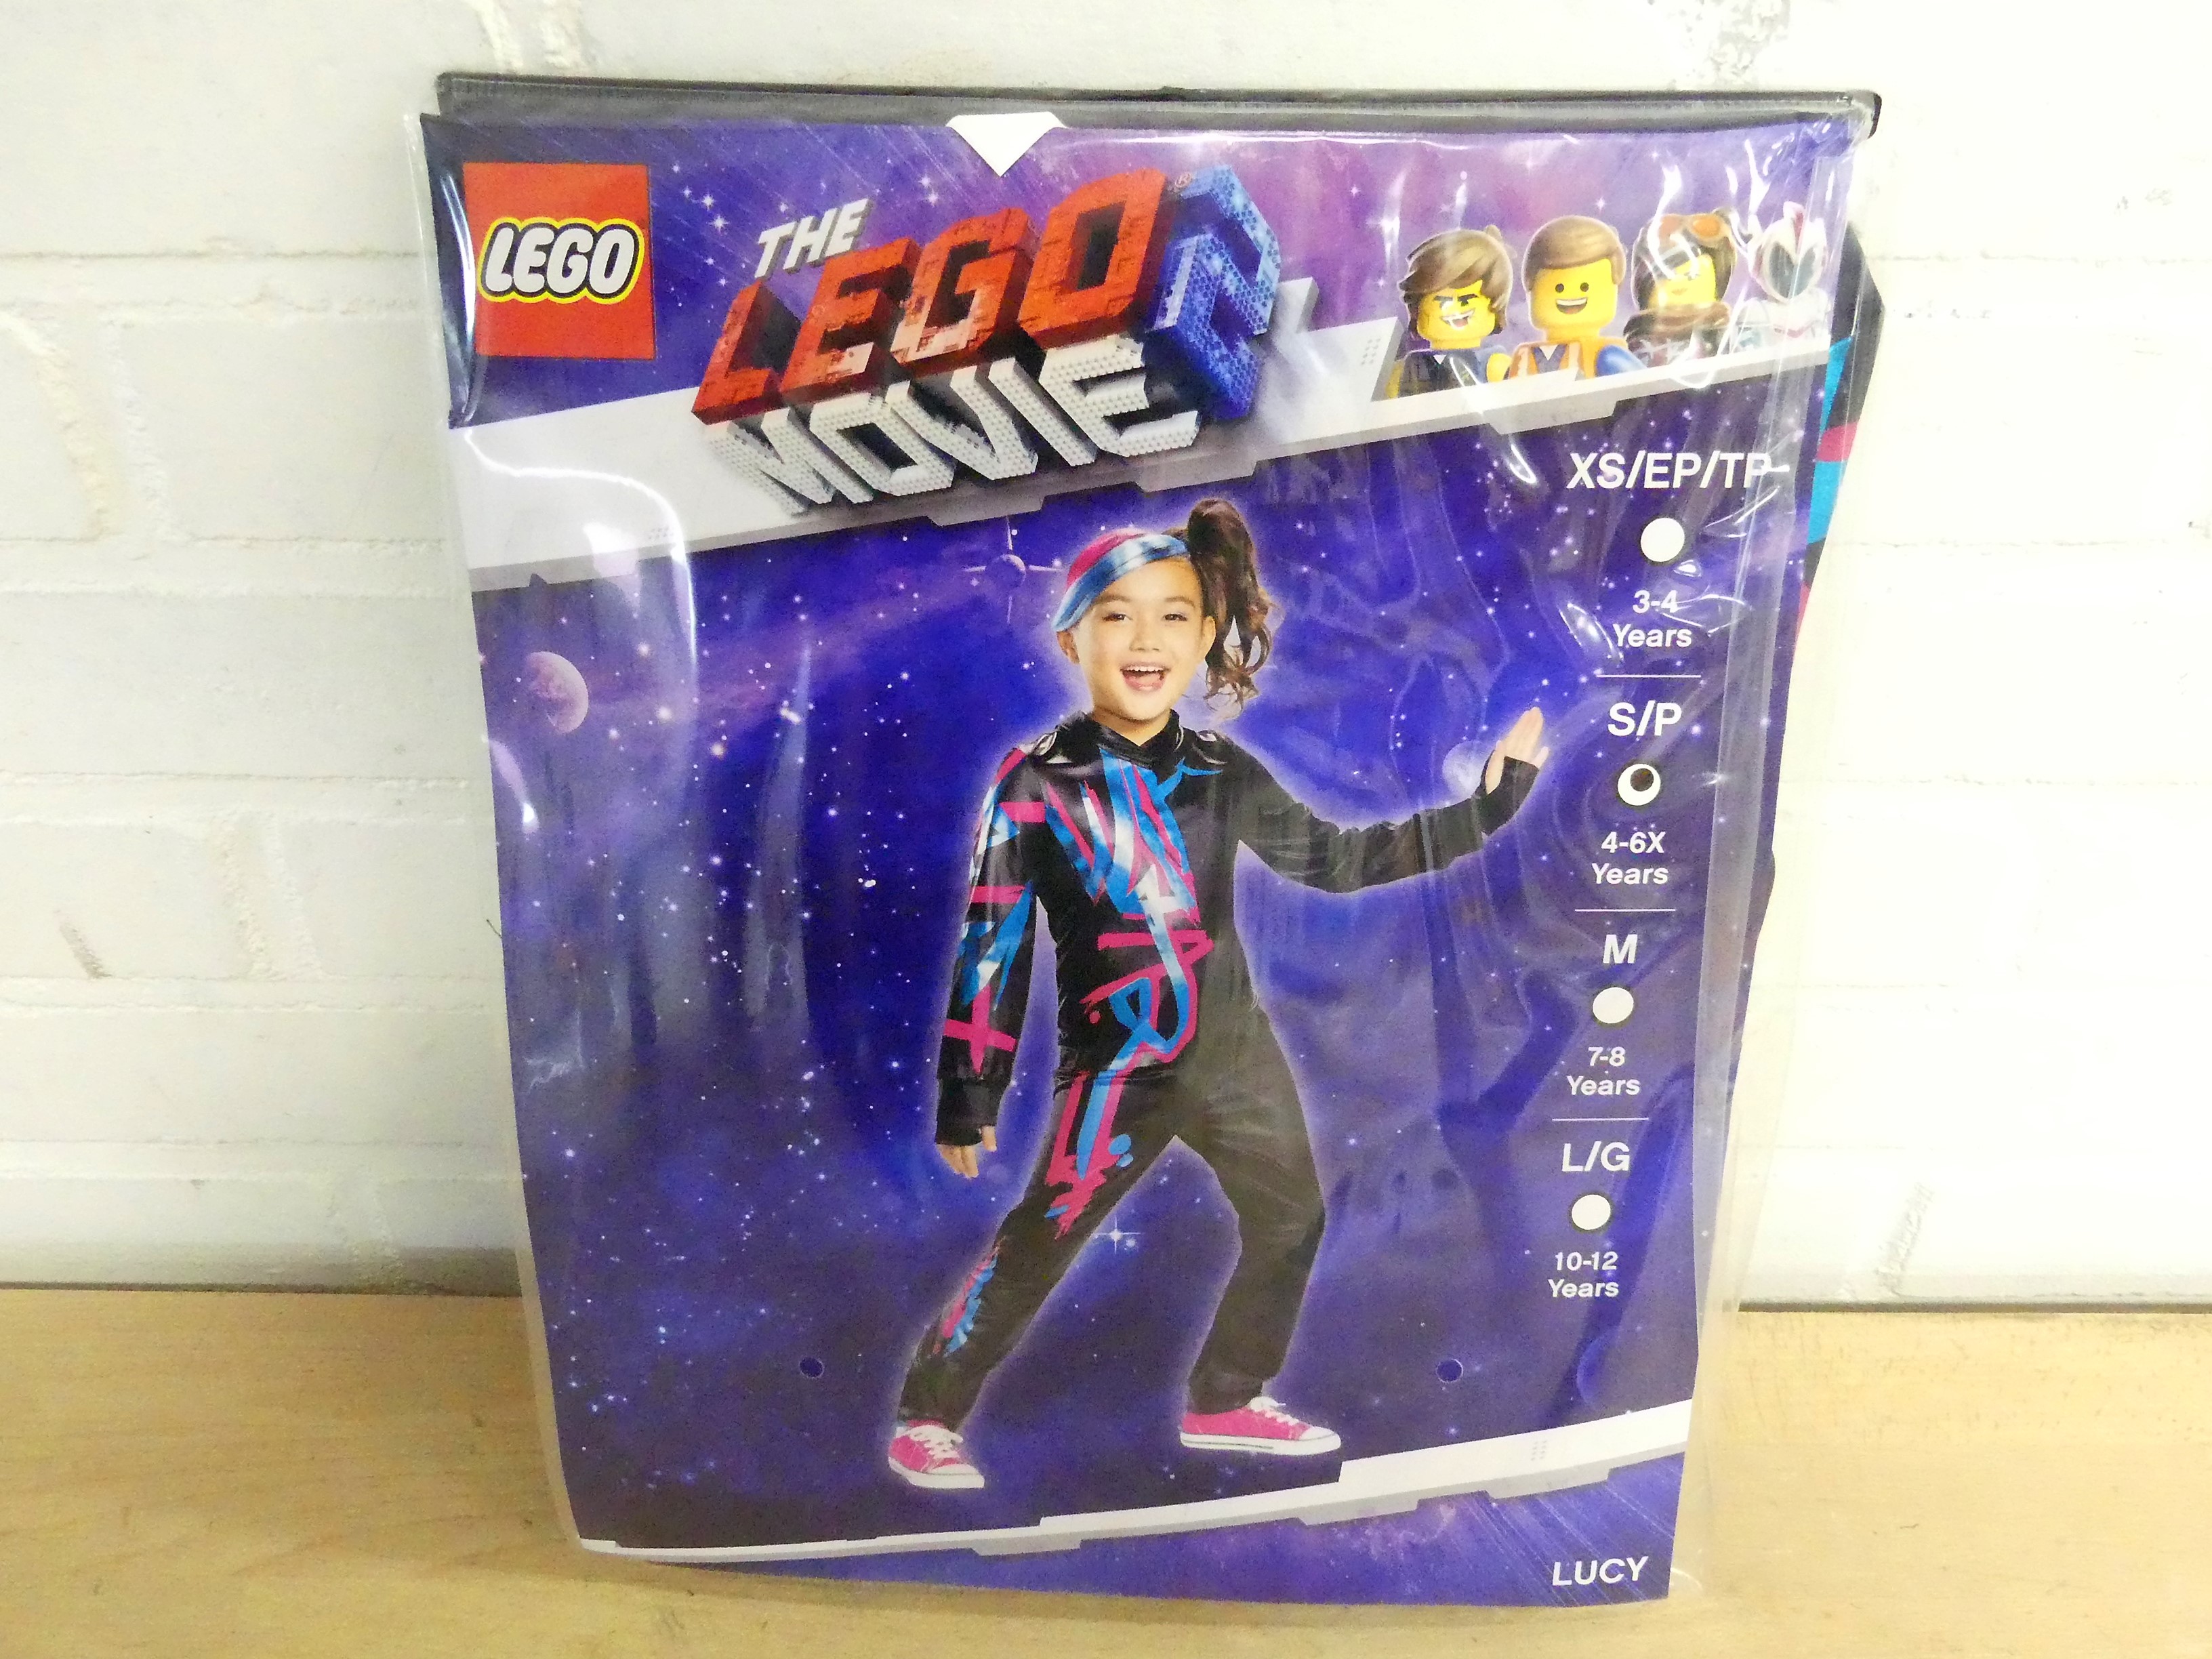 The Lego Movie 2 Lucy Girl kostuum voor kinderen 4-6 jaar S/P